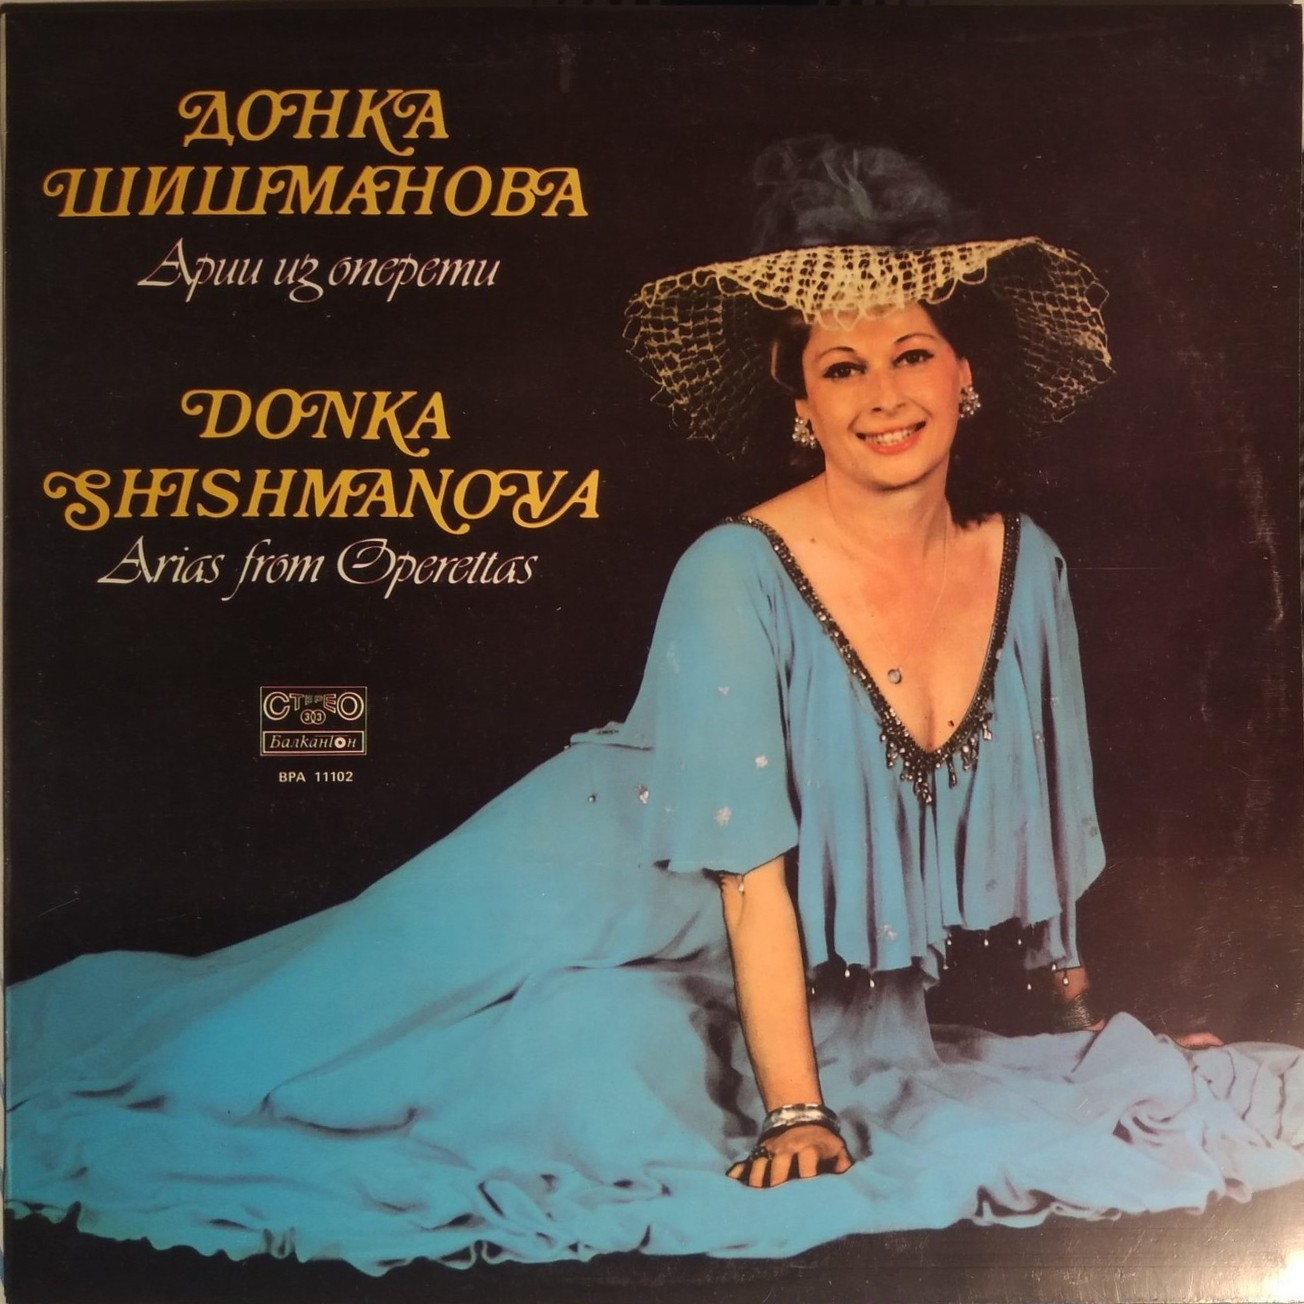 Арии из оперети. Донка Шишманова - сопран